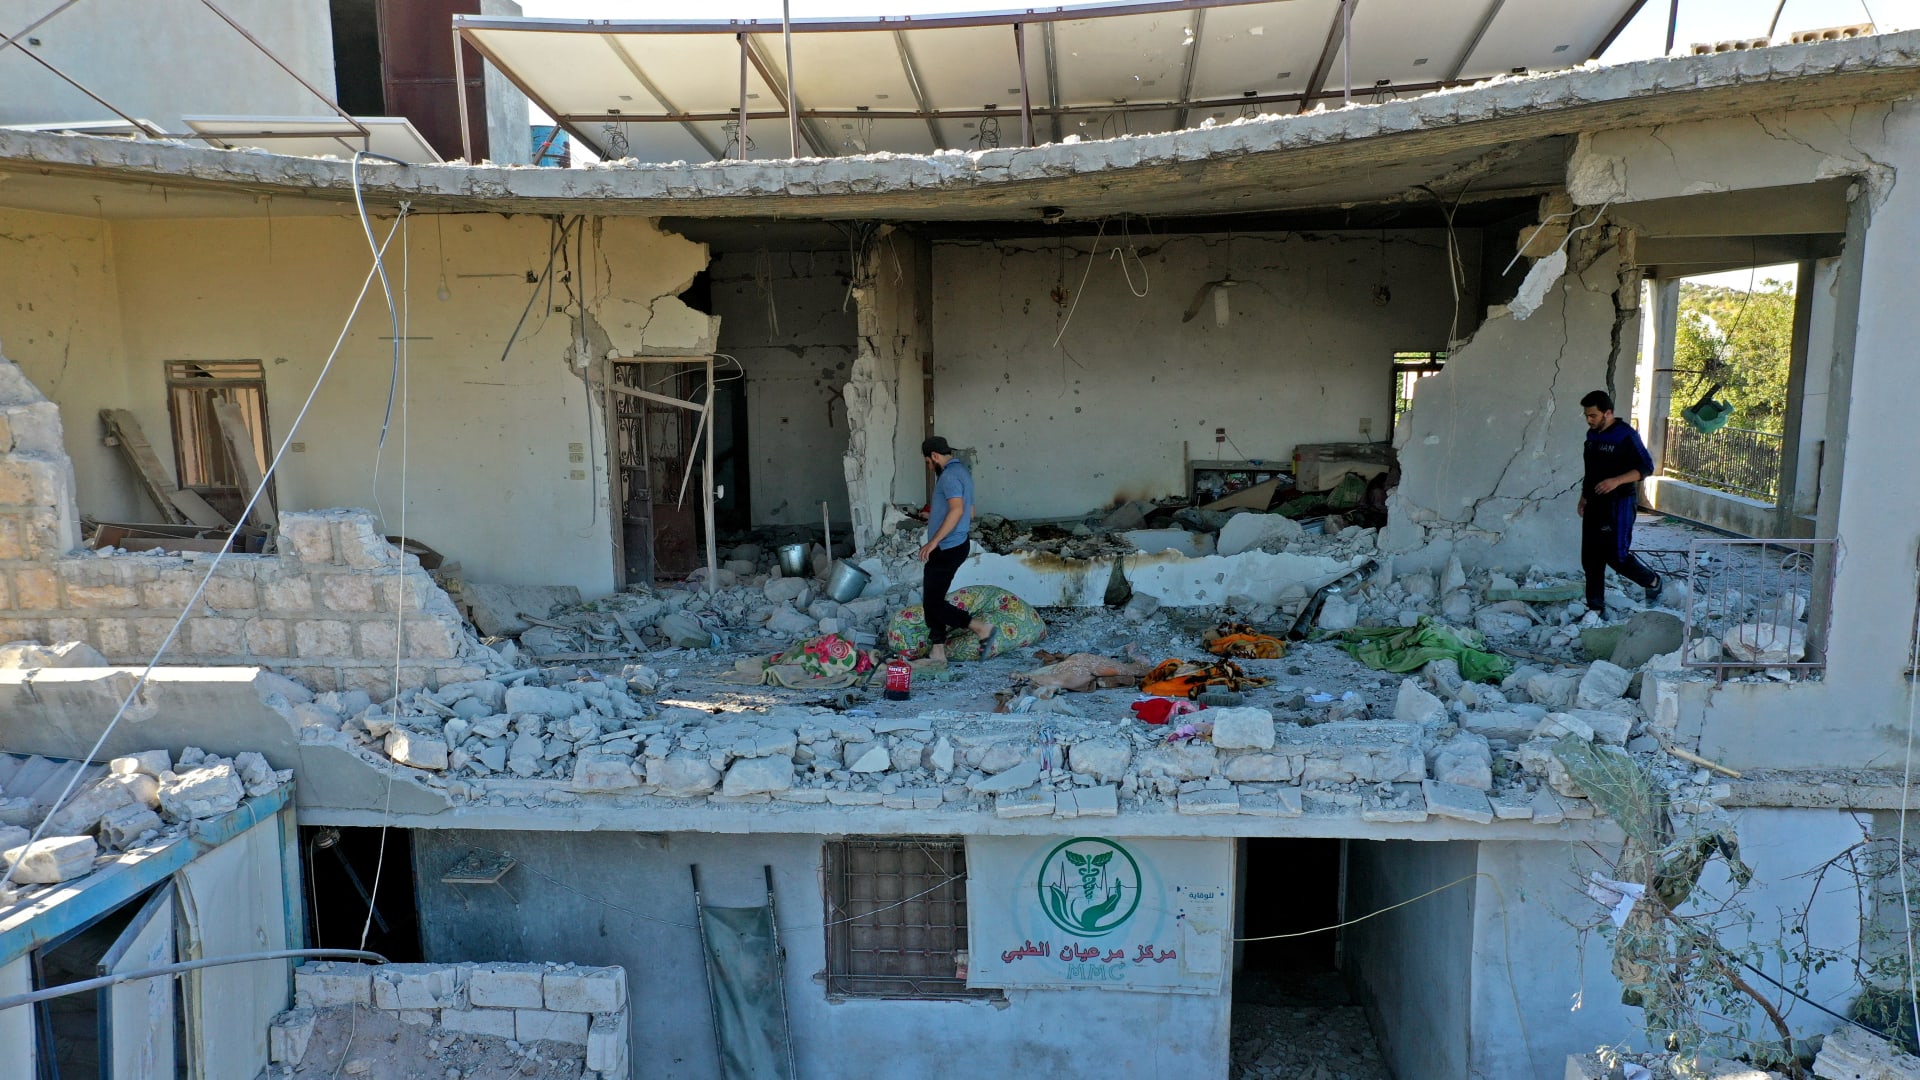 صورة أرشيفية لمبنى يؤوي المركز الطبي الوحيد في منطقة جبل الزاوية بإدلب بعدما تعرض لقصف من قبل القوات السورية